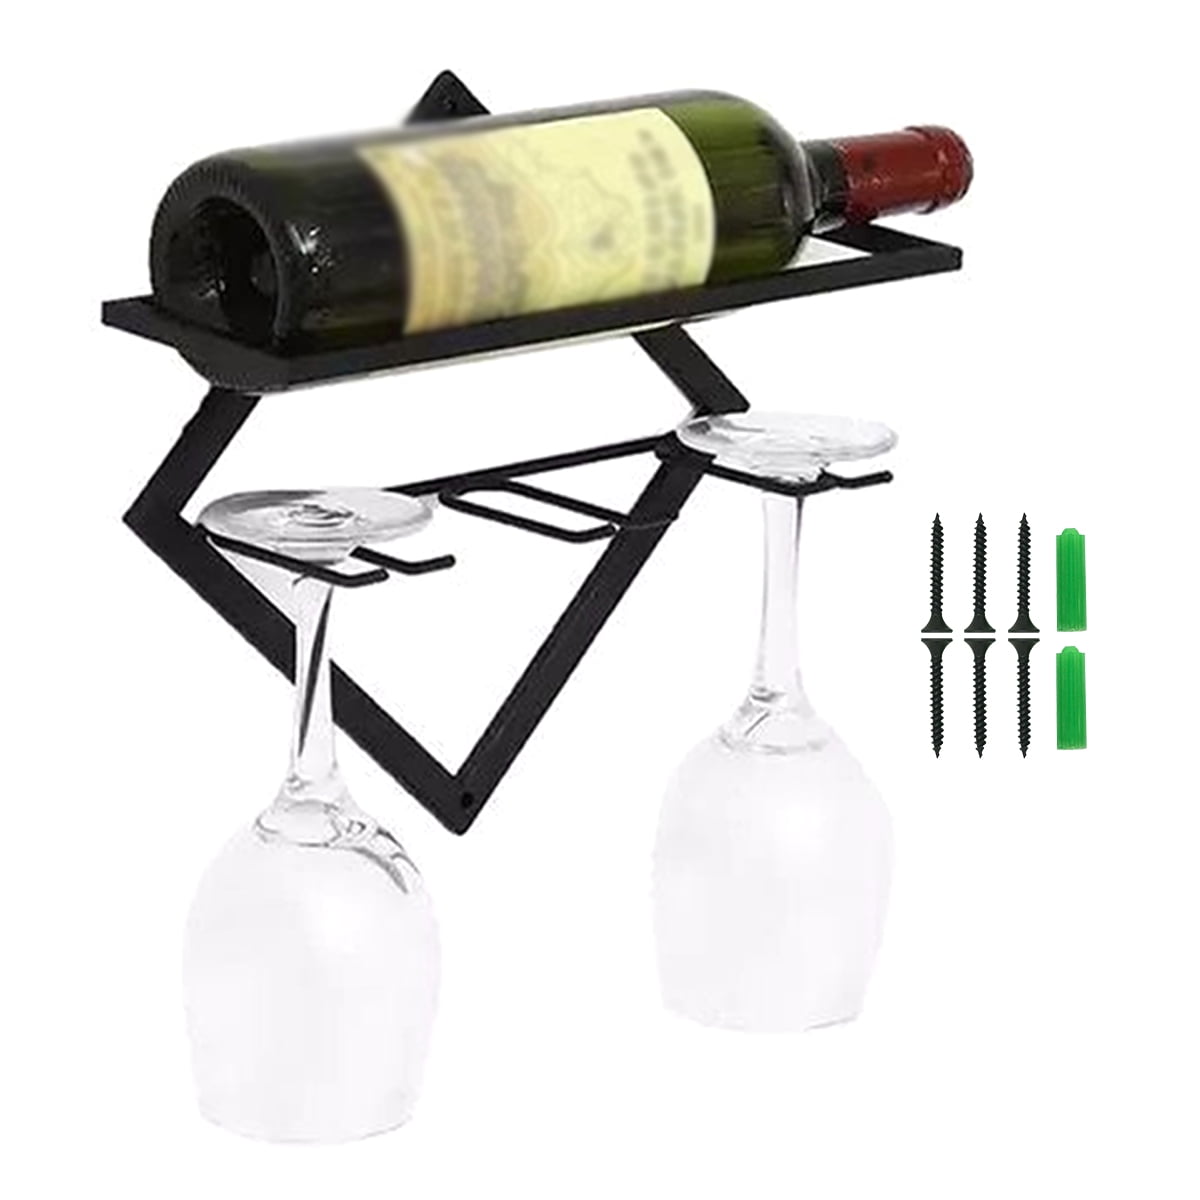 Iron Wall Mounted Red Wine Bottle Holder Spiral Display Kitchen Bar Organizer 